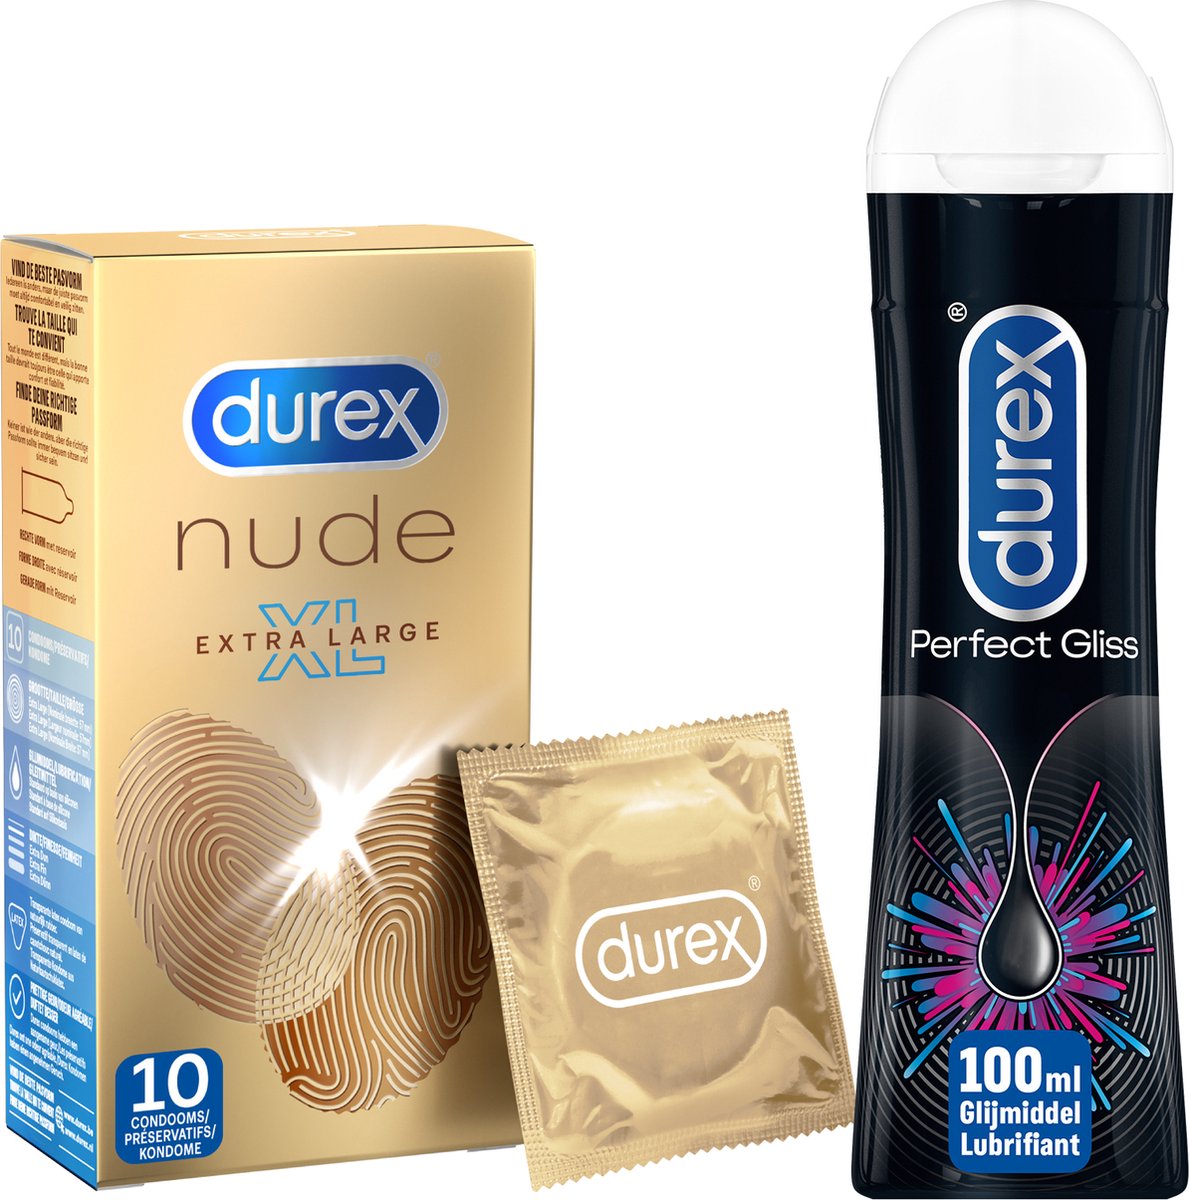 Durex - 10 stuks Condooms - Nude XL - 100 ml Glijmiddel - Perfect Gliss - Voordeelverpakking